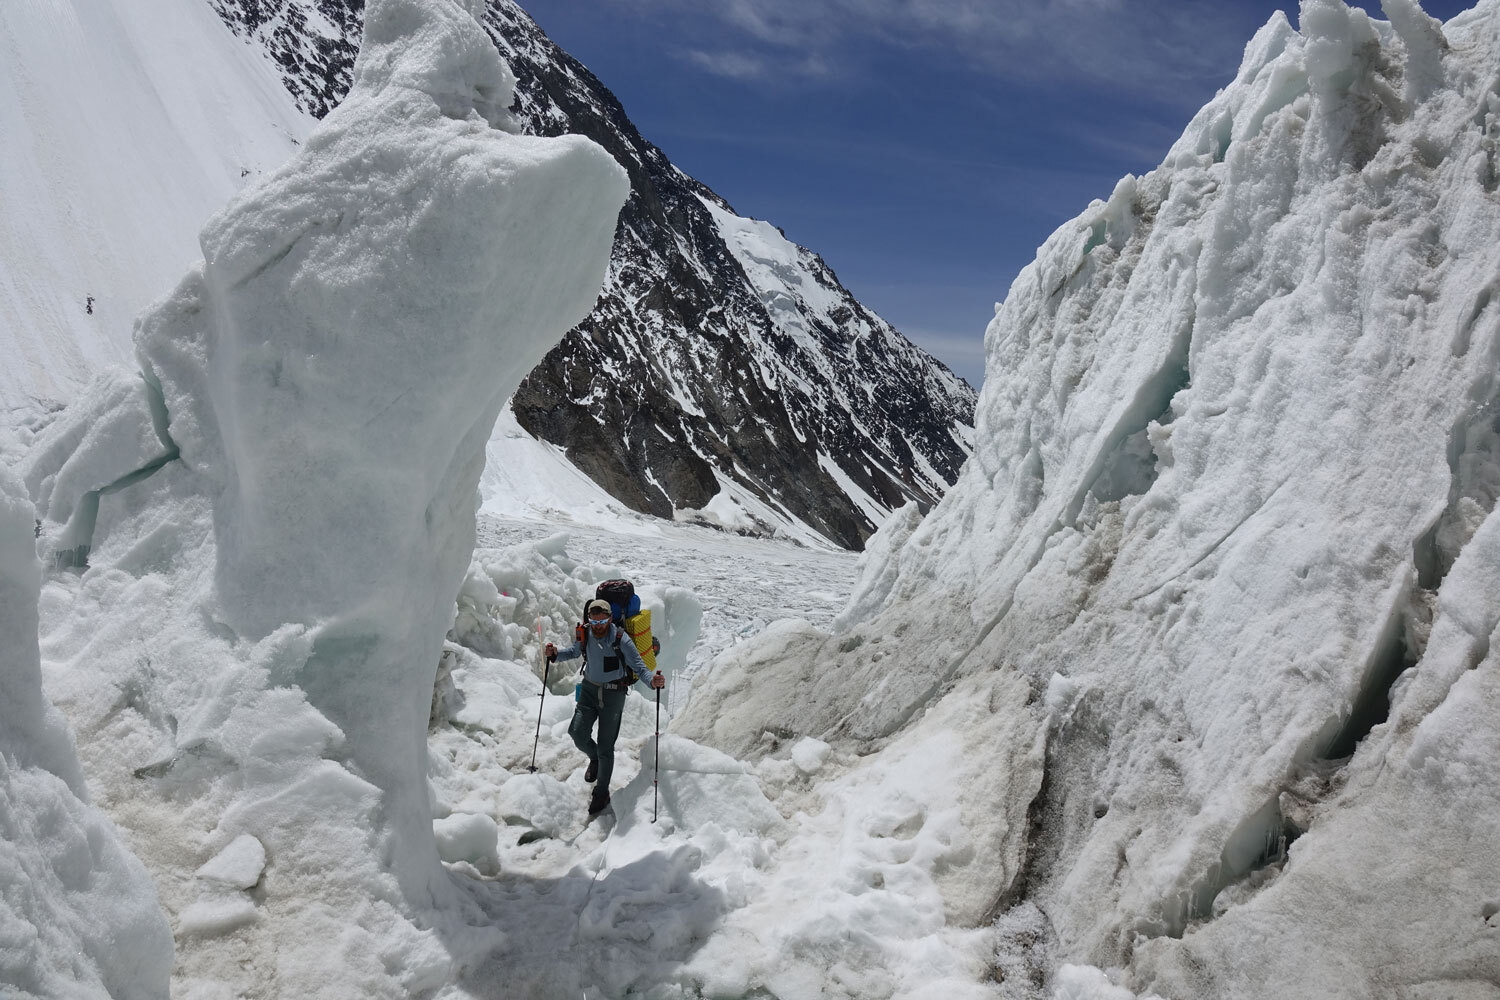 Climbing through the glacier